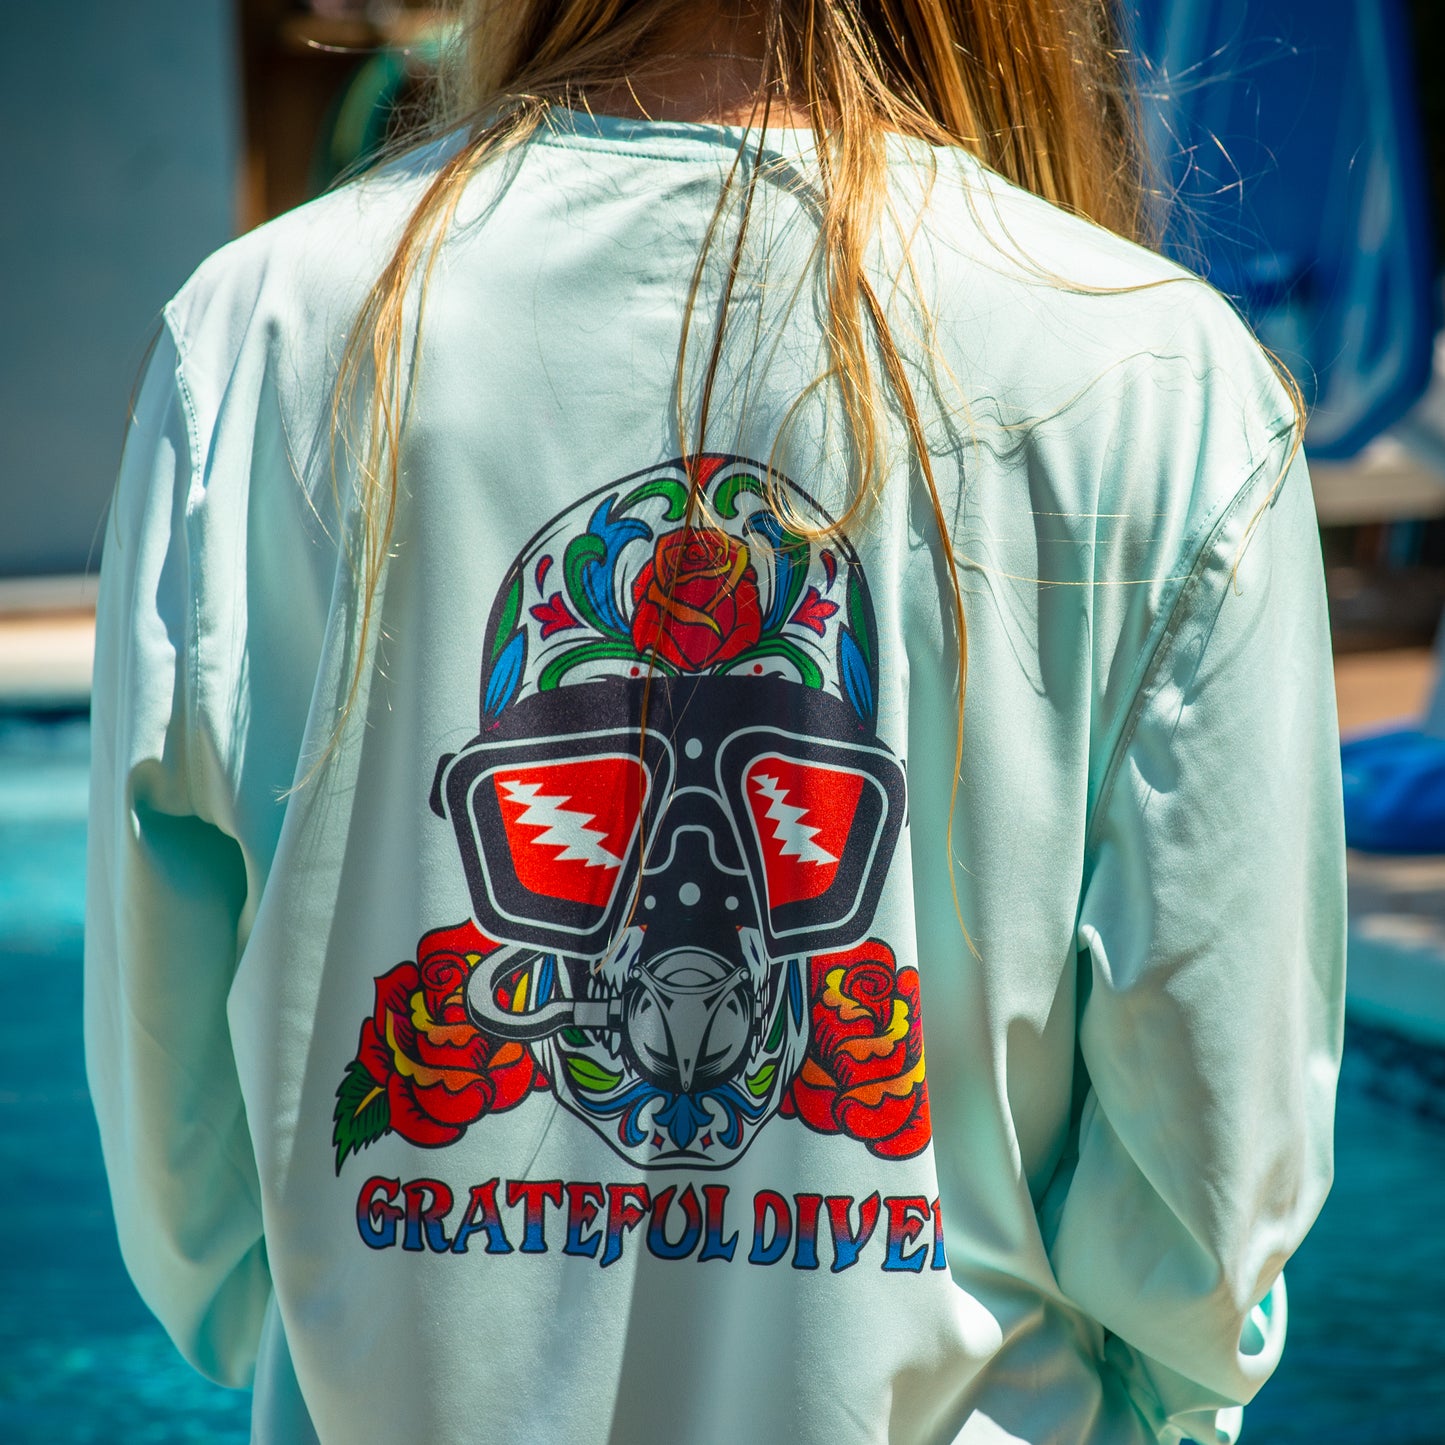 Grateful Diver Sugar Skull UV Shirt